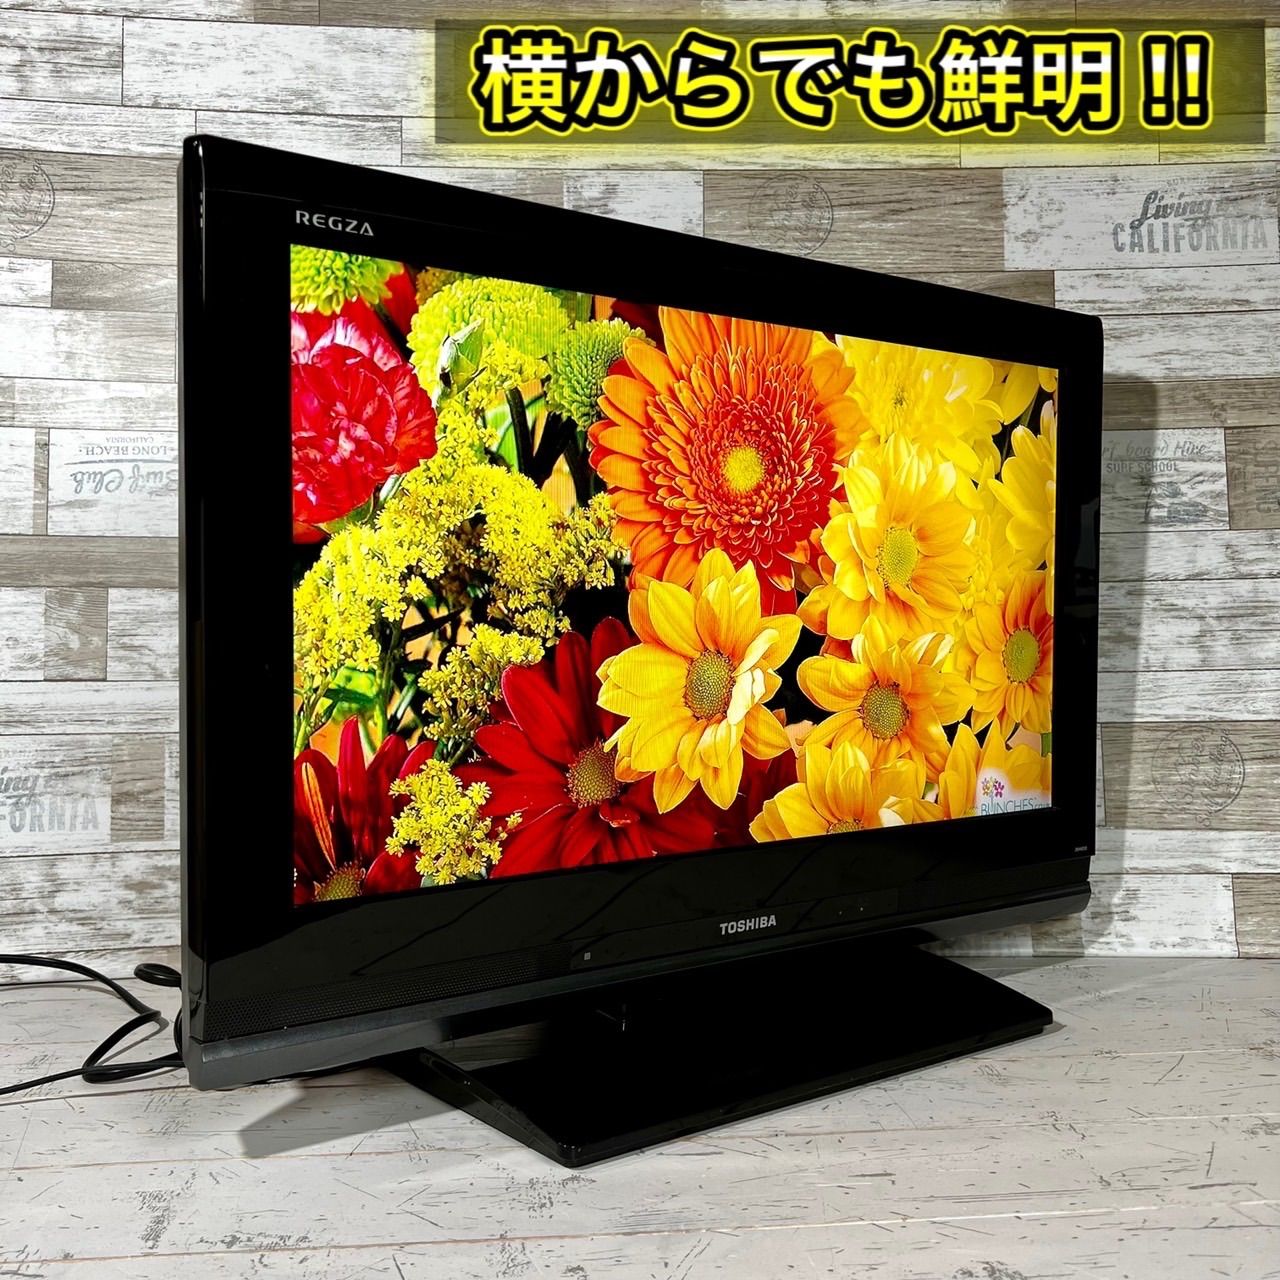 専門店では 液晶テレビ 26インチ Yahoo!オークション 東芝 - TOSHIBA 